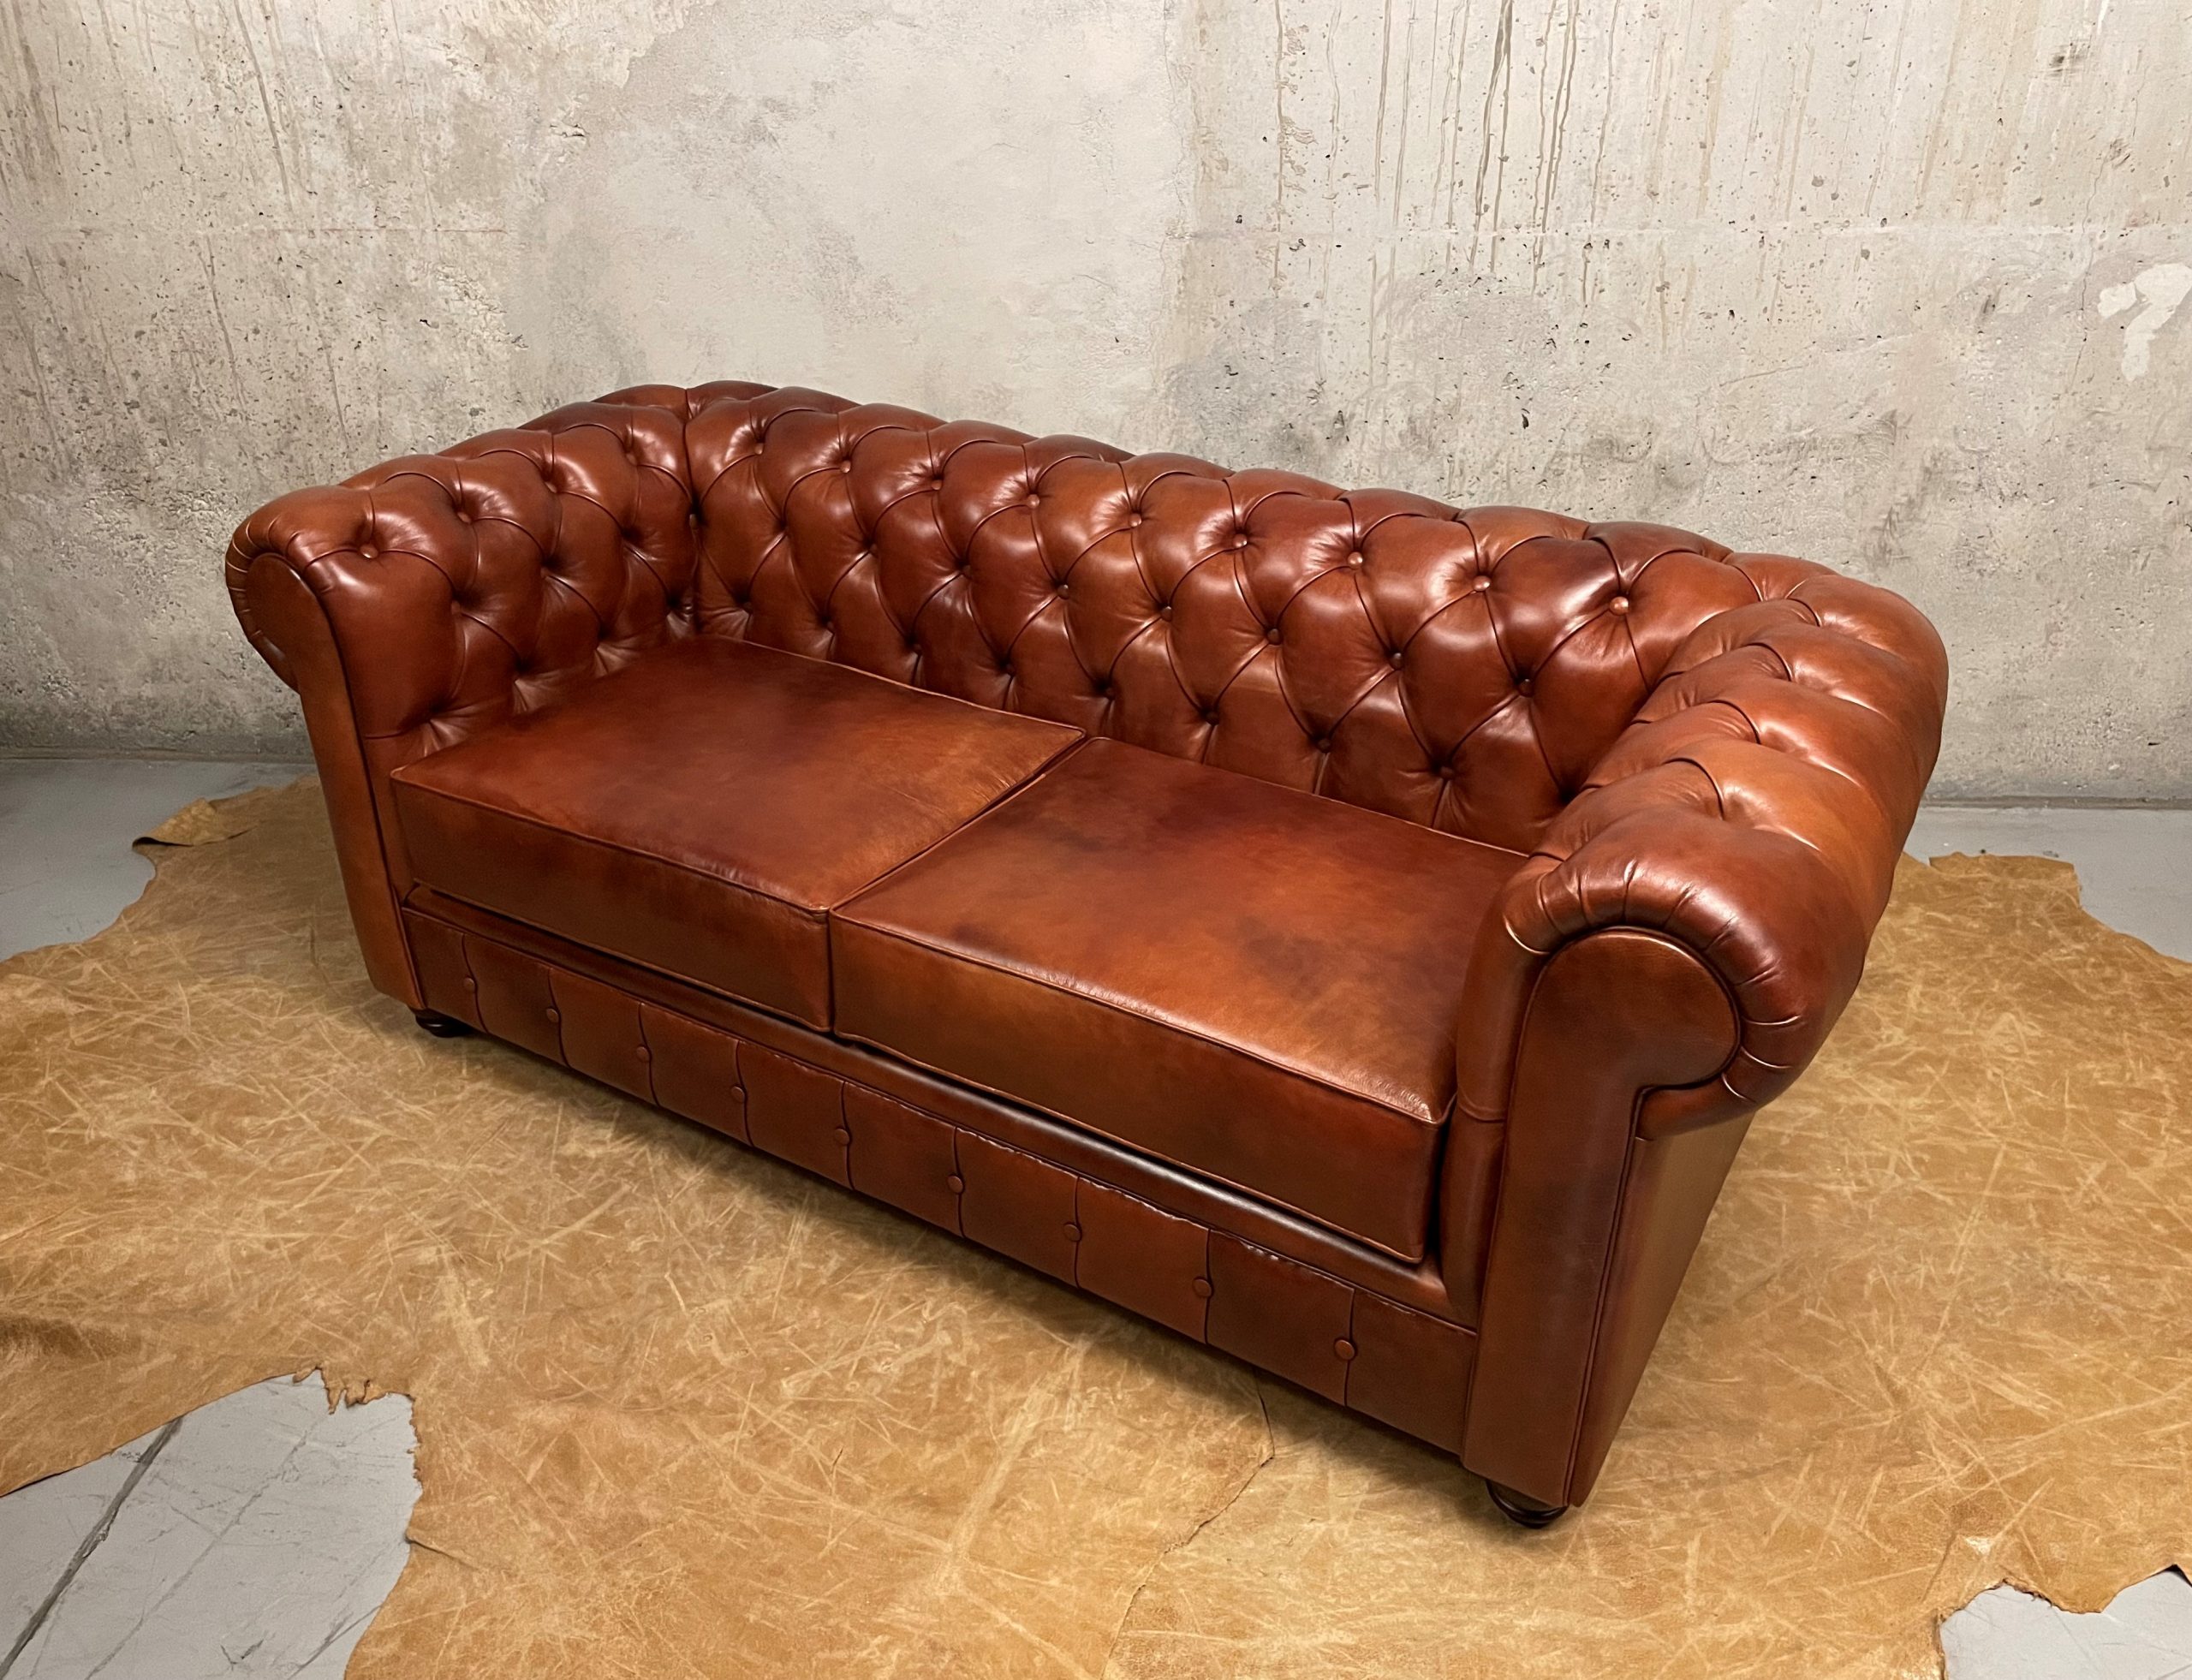 Sofa de Cuero – Chesterfield Color Hunter Red Brown, respaldo recto clásico, Cuero 100% Natural Uruguayo